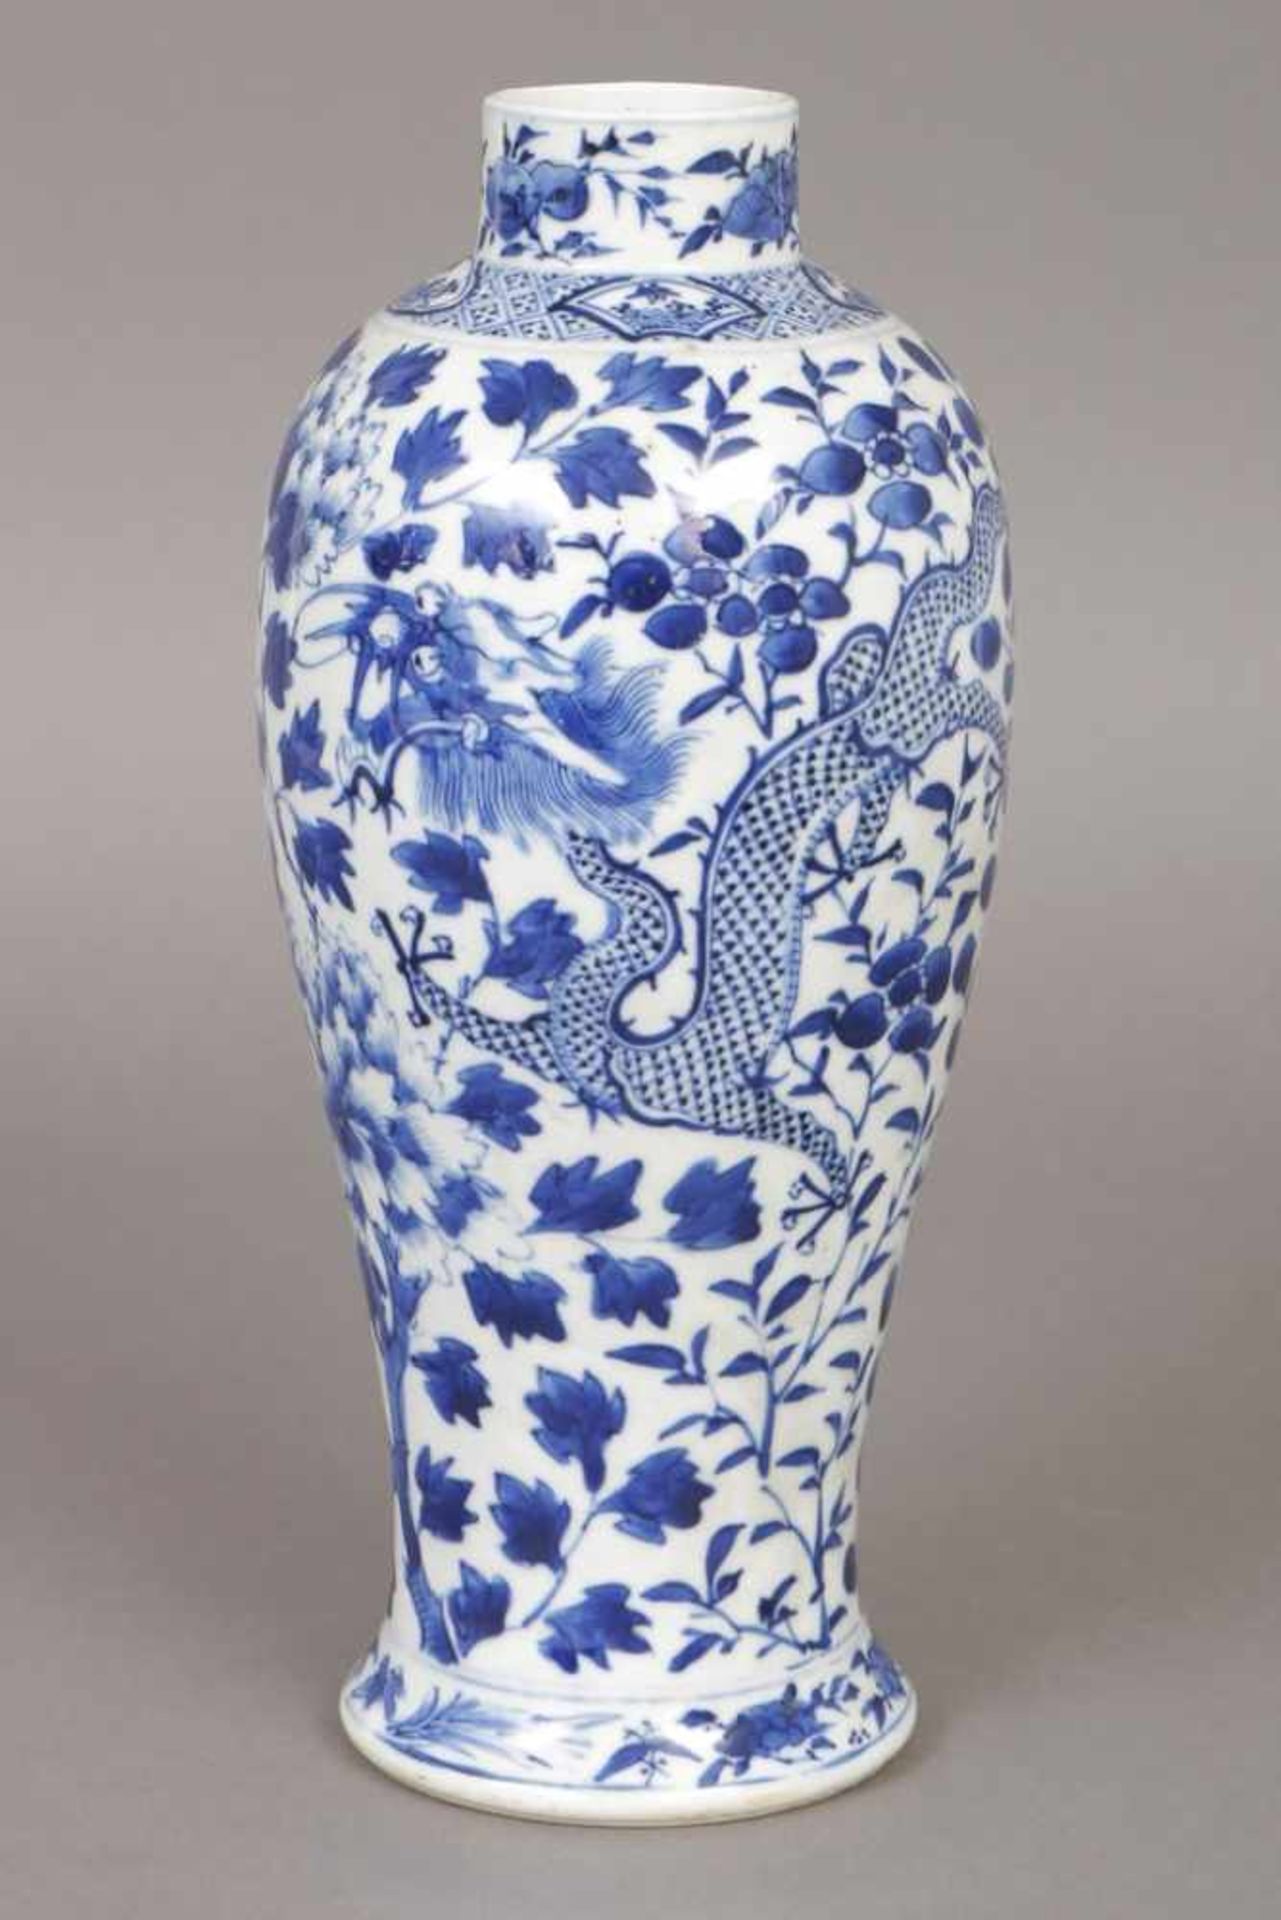 Chinesische Meiping-Vase Porzellan, hell glasiert, mit Drachen-, Päonien- und Blätterdekor in